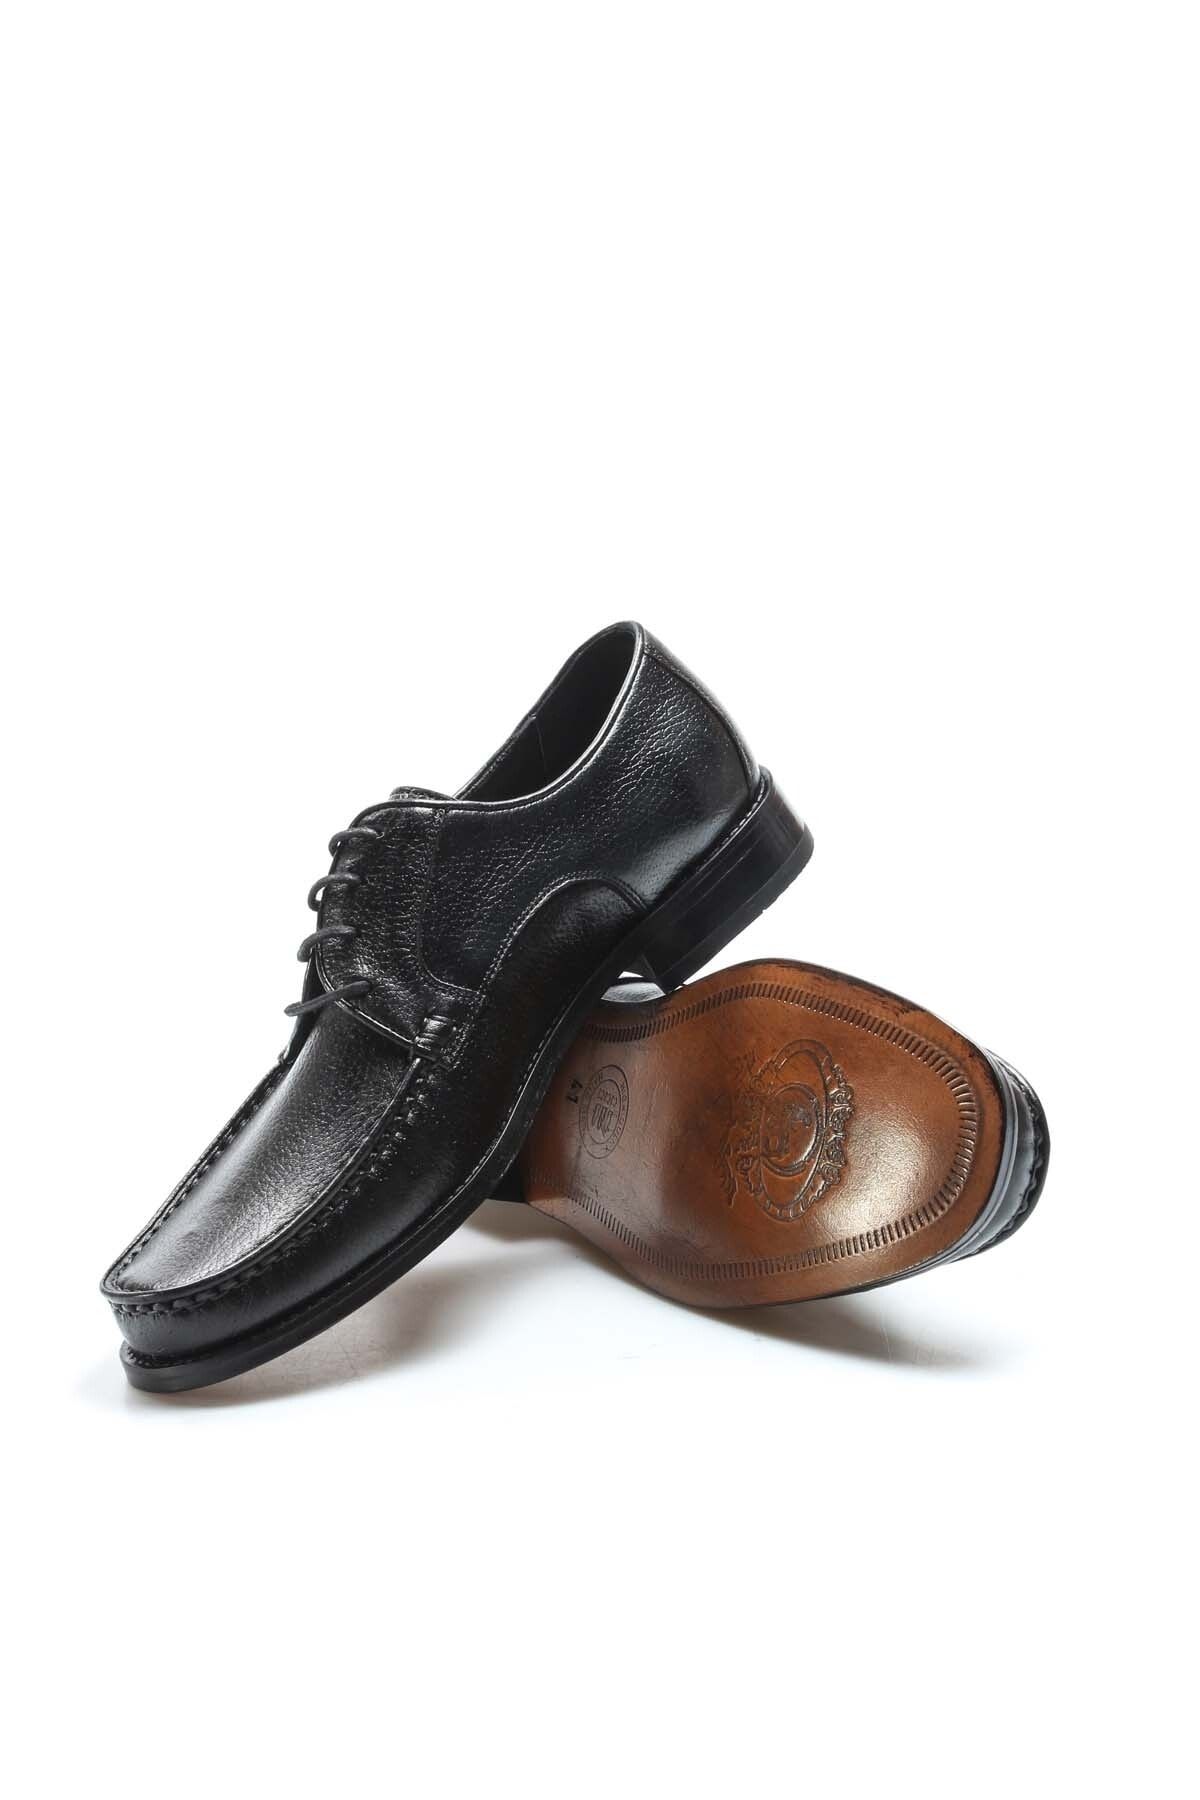 Ayakkabıhane Kösele Taban Içi Dışı Hakiki Deri Siyah Erkek Klasik Ayakkabı Ah0893213270